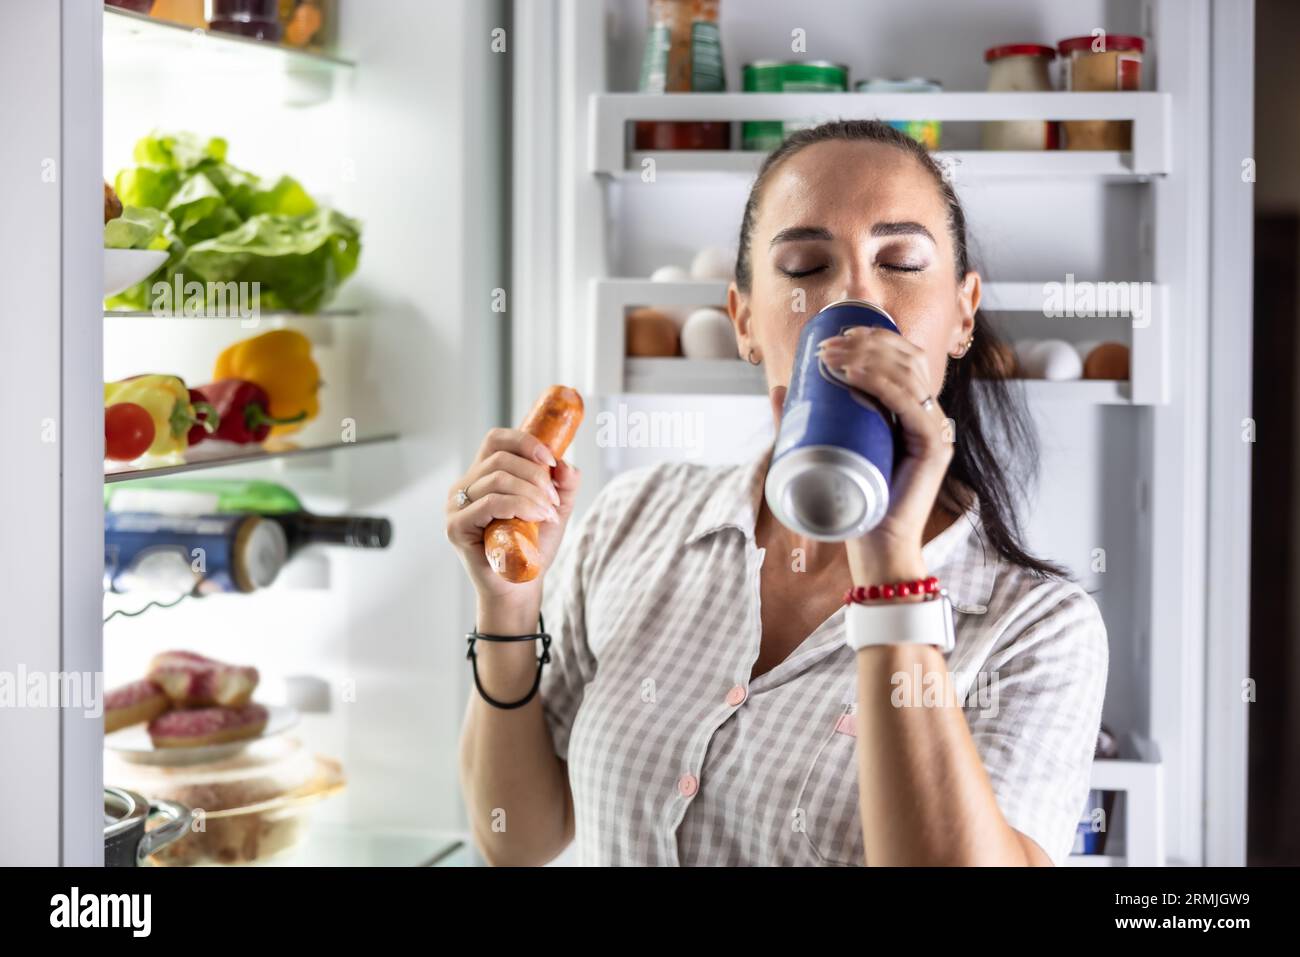 Hungrige Frau im Pyjama trinkt Bier und isst abends Würstchen am Kühlschrank. Stockfoto